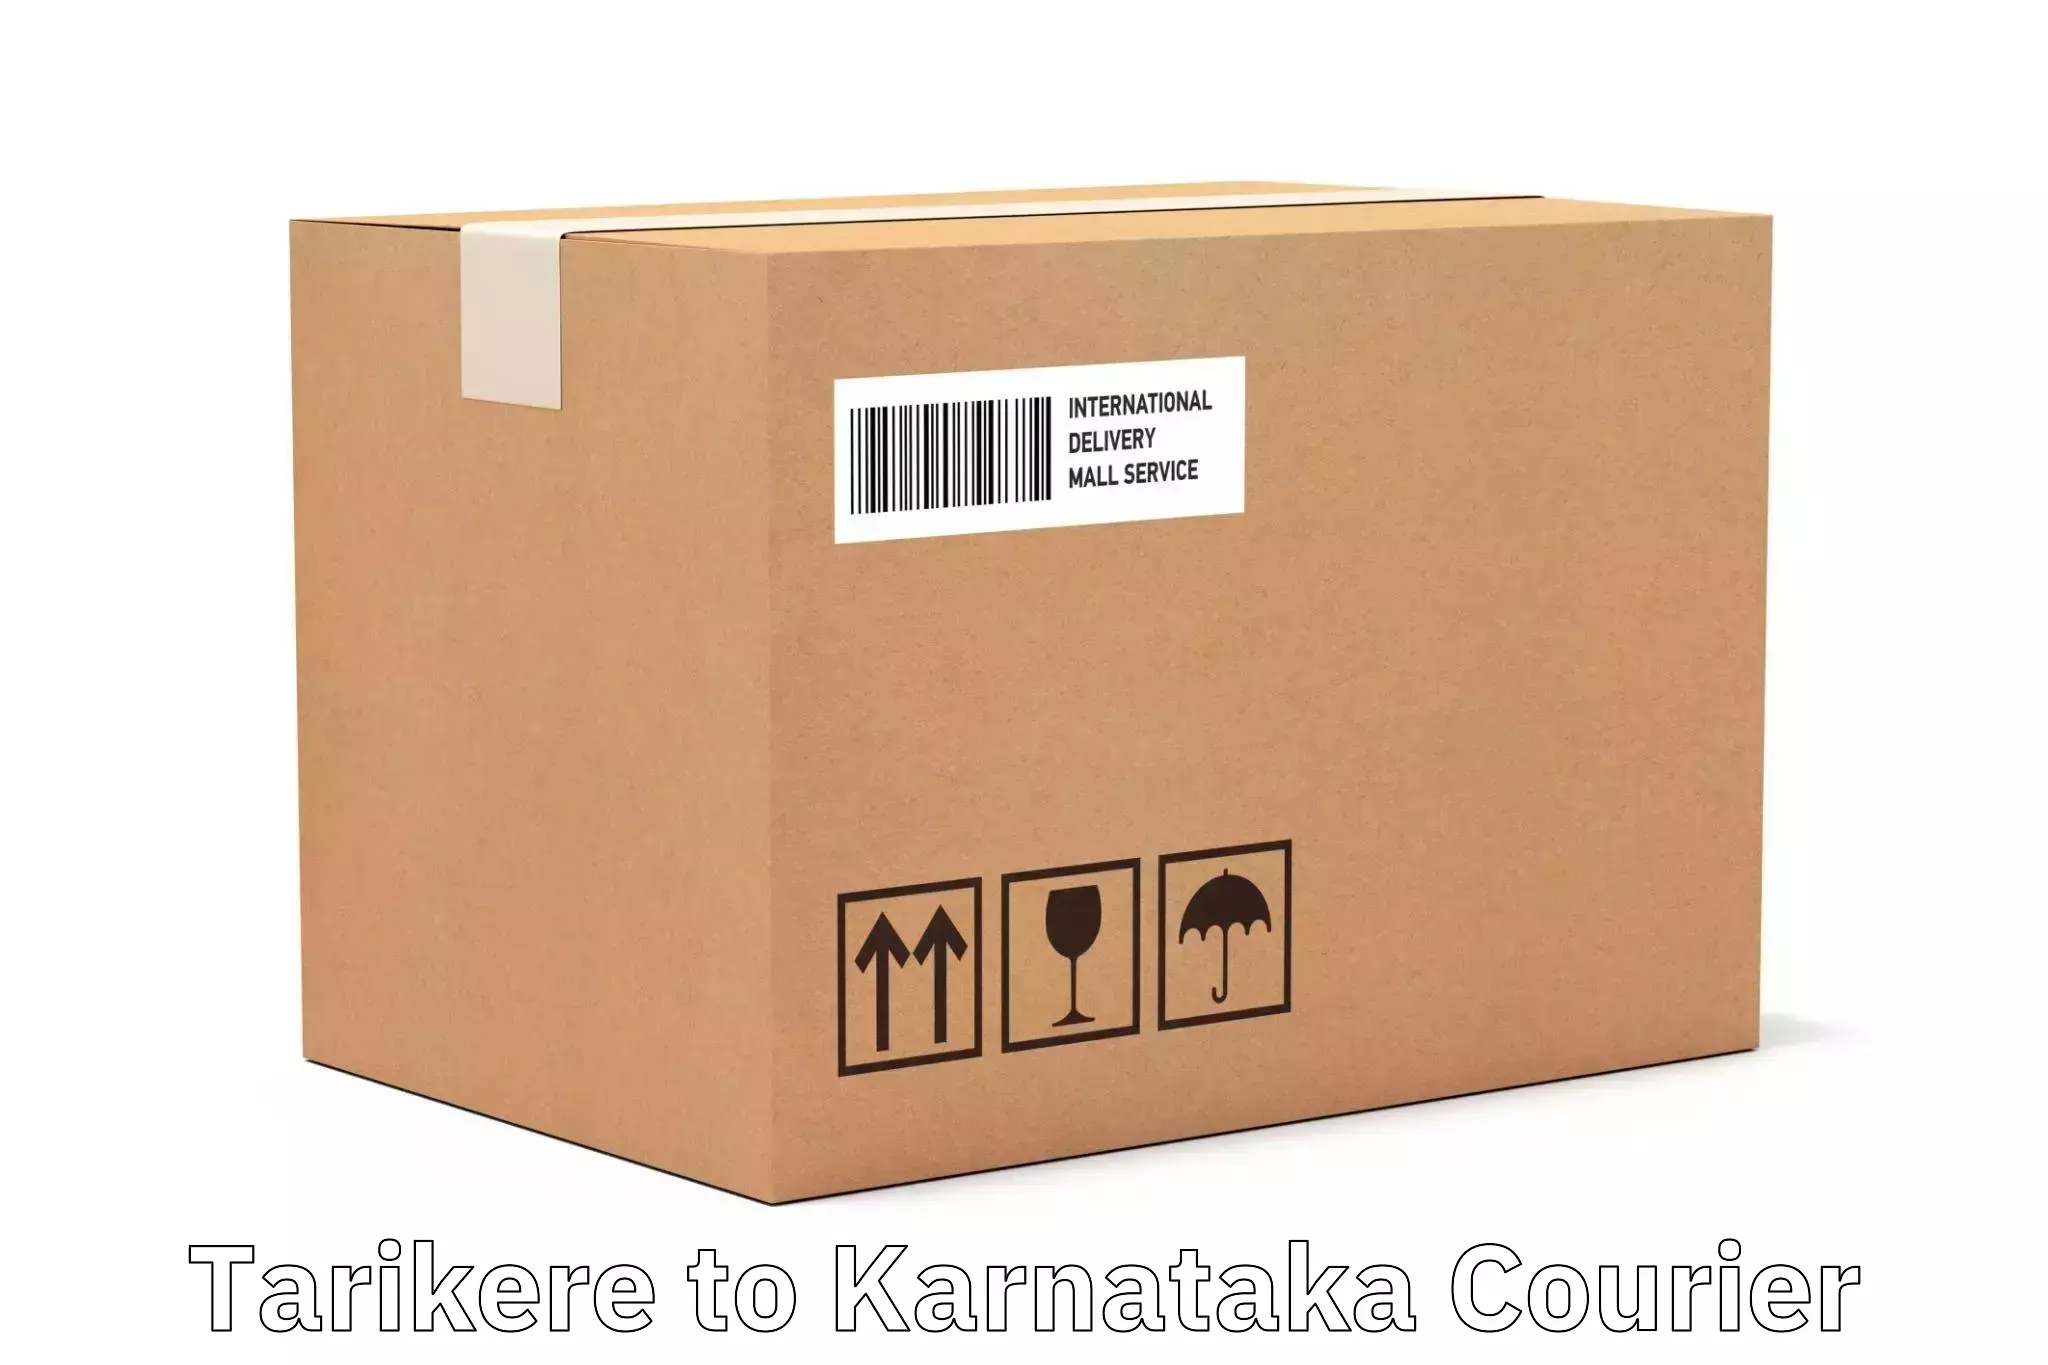 Tailored freight services Tarikere to Karnataka